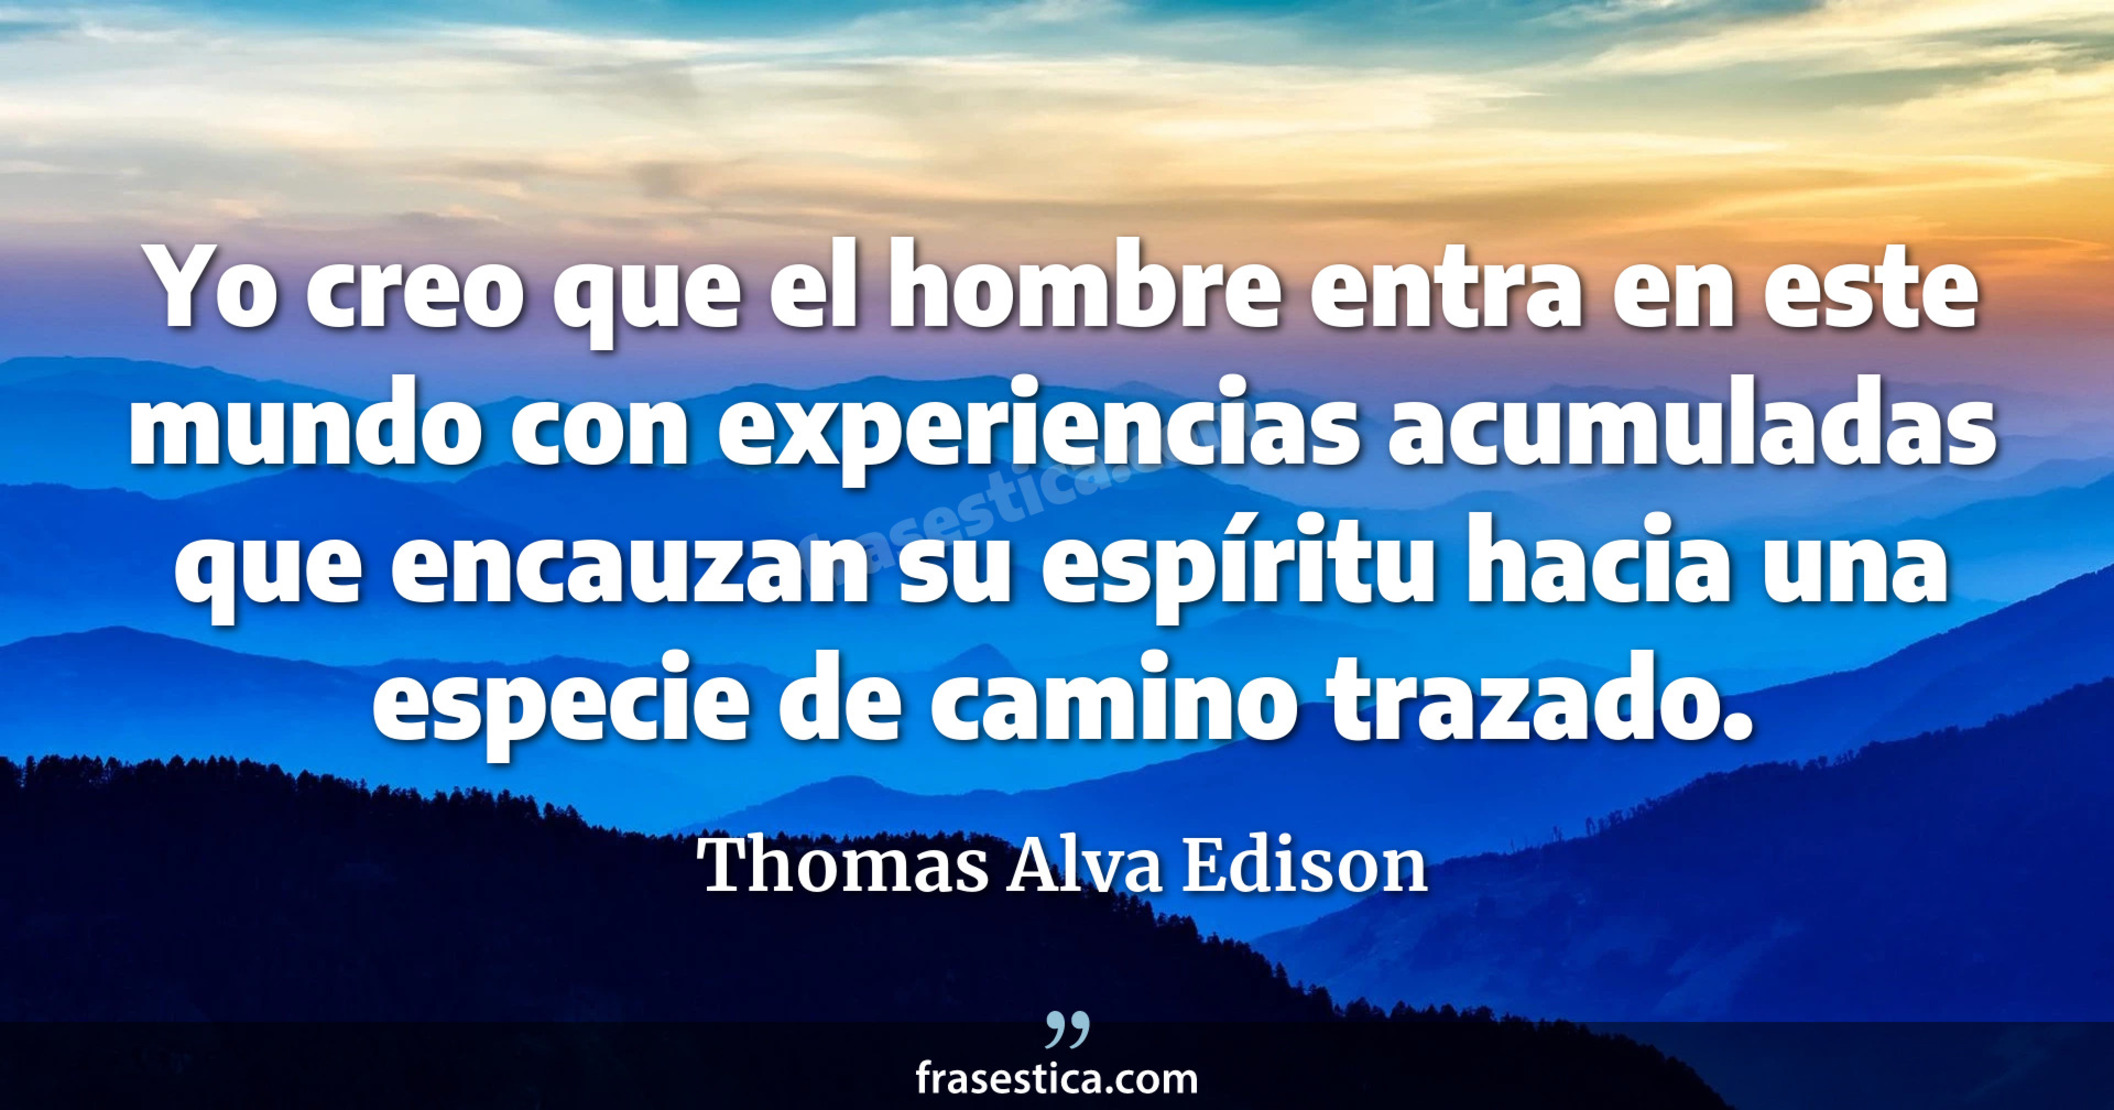 Yo creo que el hombre entra en este mundo con experiencias acumuladas que encauzan su espíritu hacia una especie de camino trazado. - Thomas Alva Edison